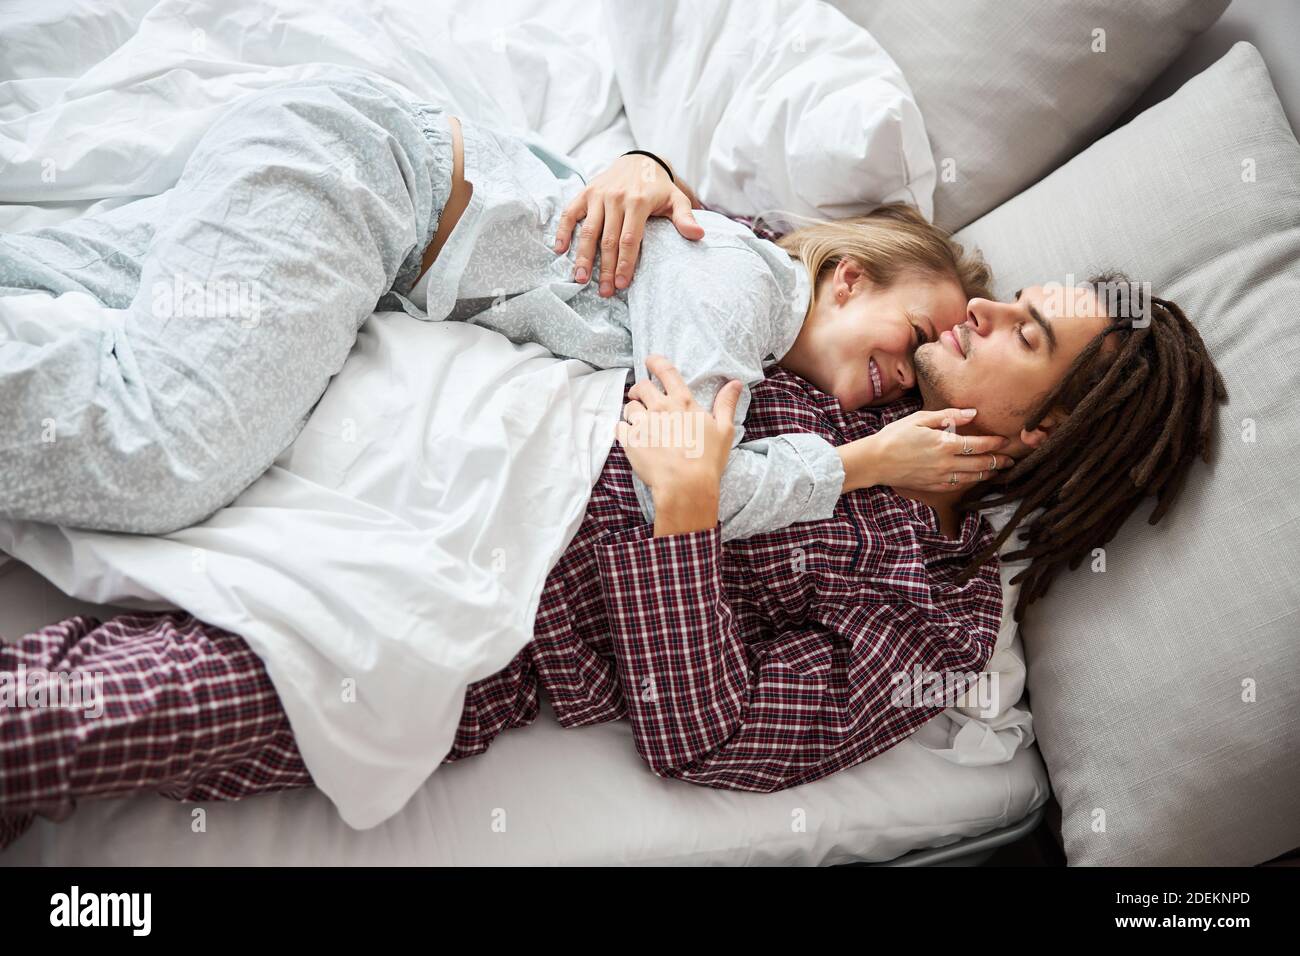 Glücklich junges Paar in der Liebe Kuscheln im Bett Stockfotografie - Alamy